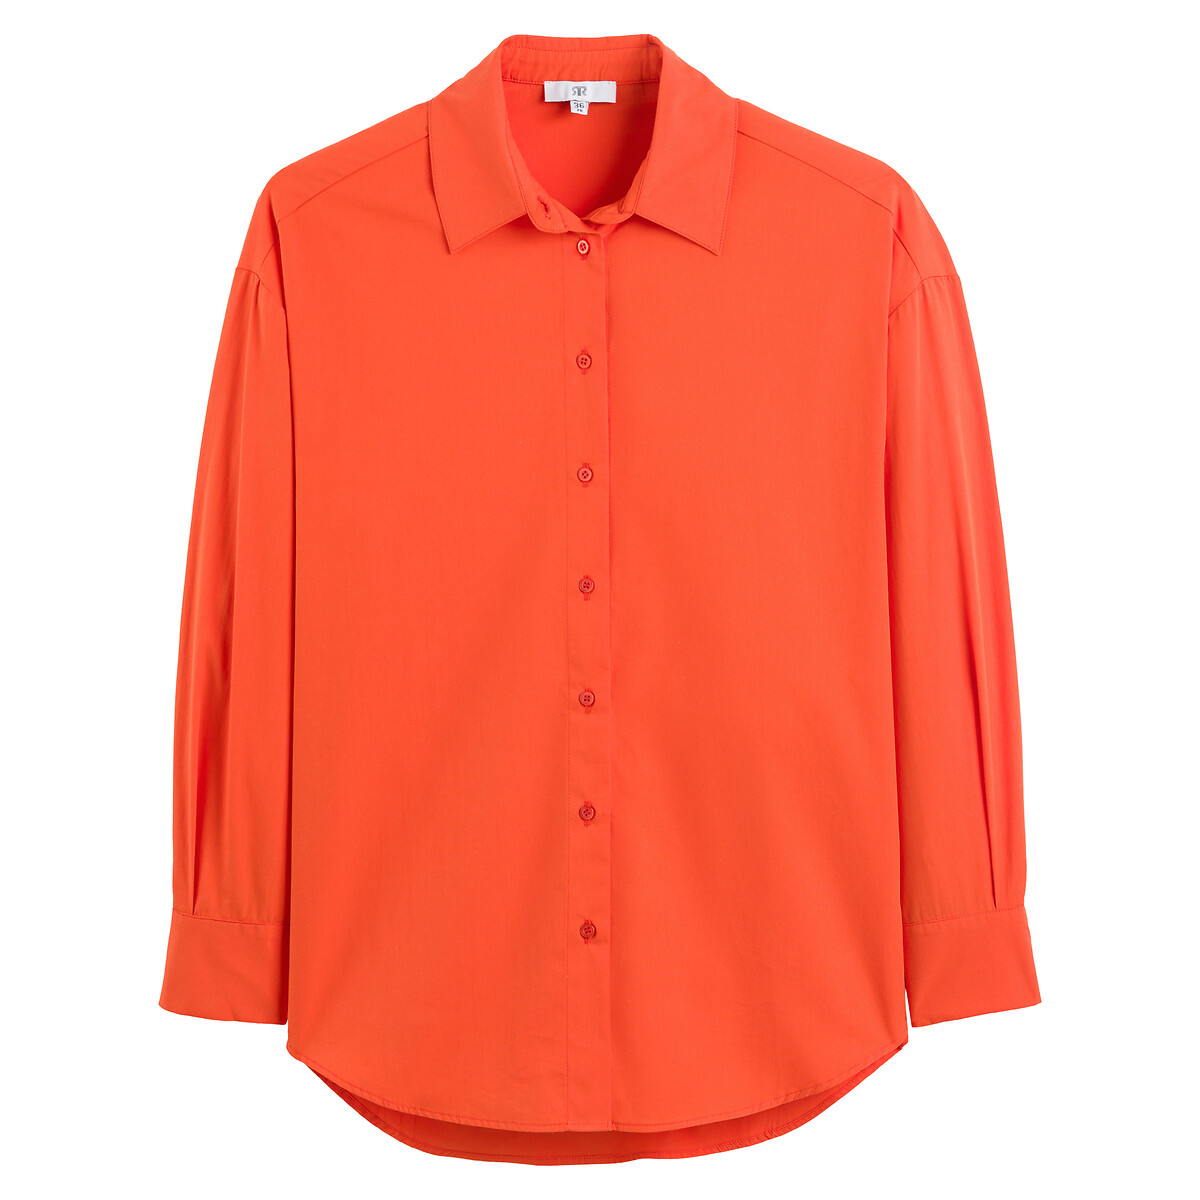 Рубашка Широкая с длинными рукавами 44 (FR) - 50 (RUS) оранжевый LaRedoute, размер 44 (FR) - 50 (RUS) Рубашка Широкая с длинными рукавами 44 (FR) - 50 (RUS) оранжевый - фото 5